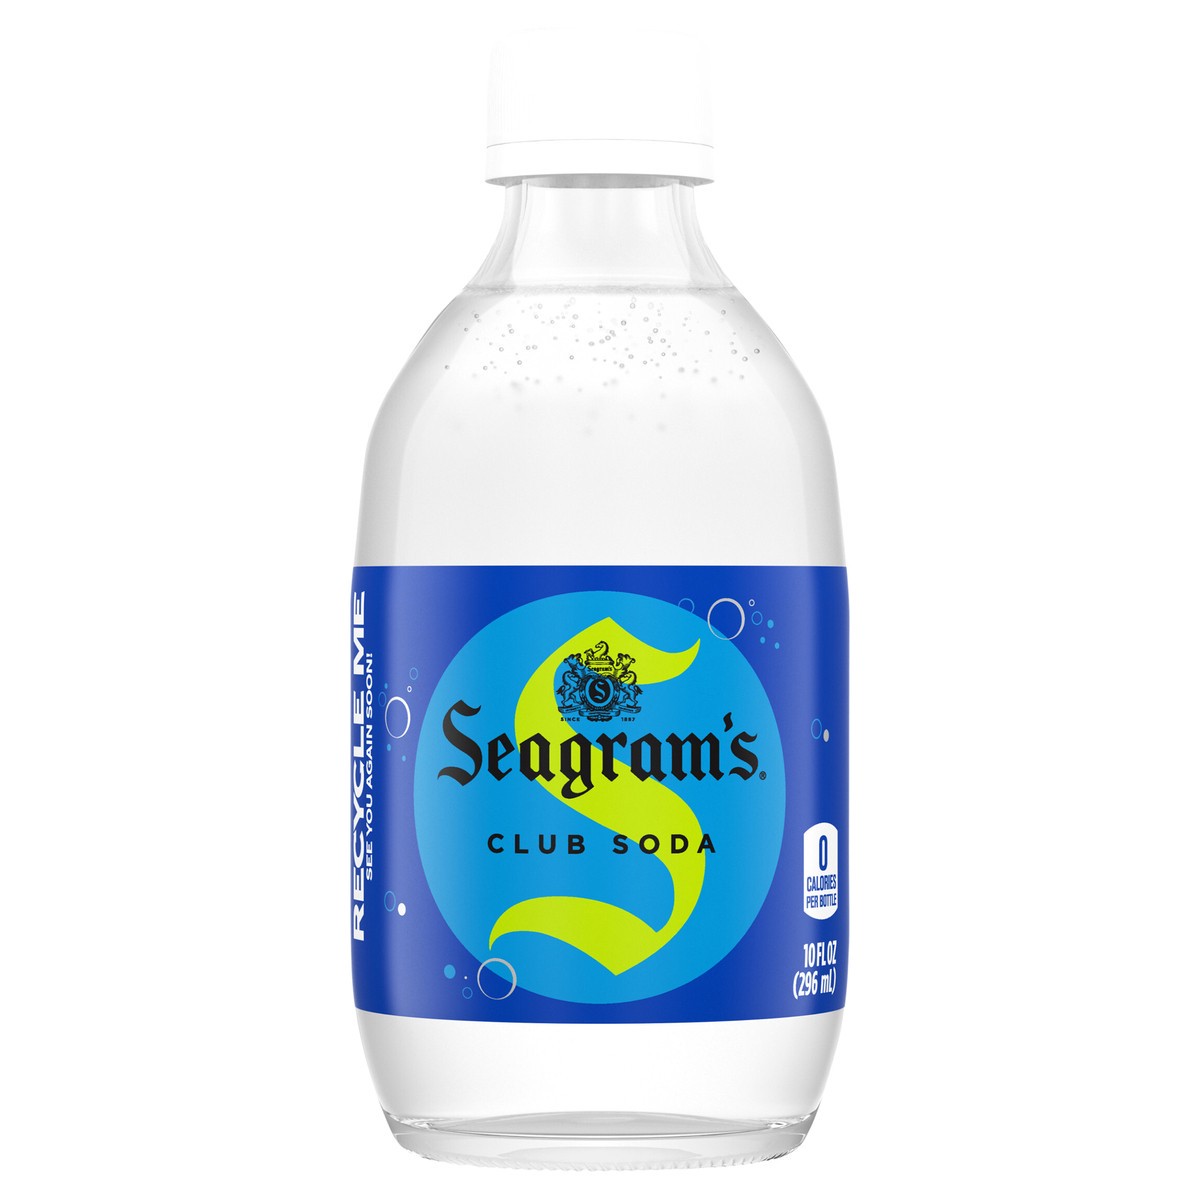 slide 1 of 9, Seagram's Seagrams Club Soda Glass Bottle- 10 fl oz, 60 oz